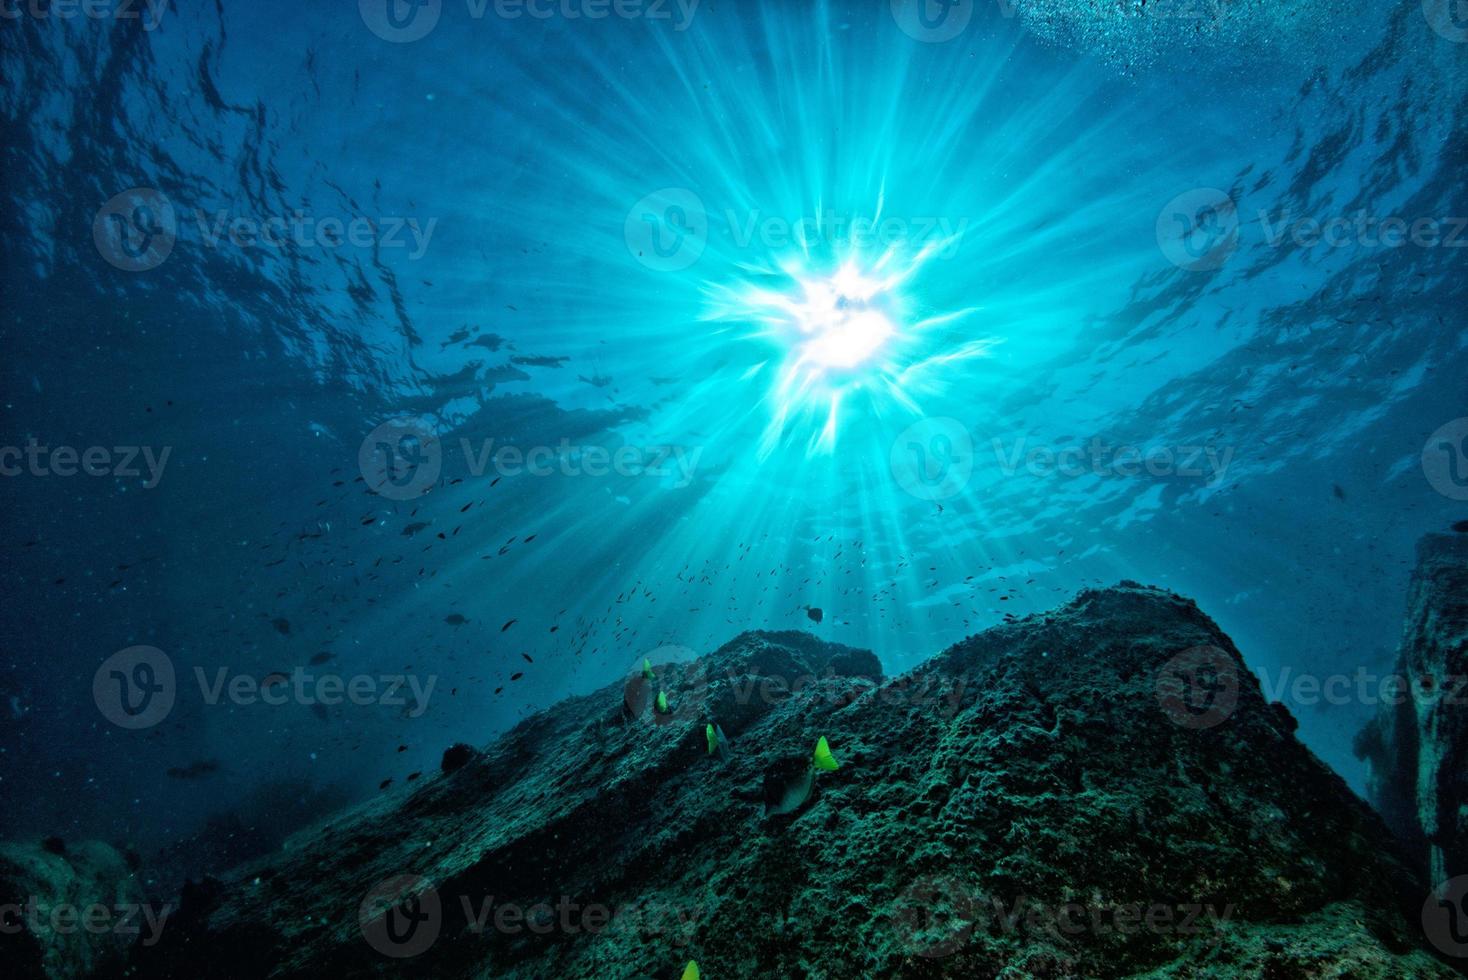 buceo en arrecifes coloridos bajo el agua en el mar de cortez de méxico foto